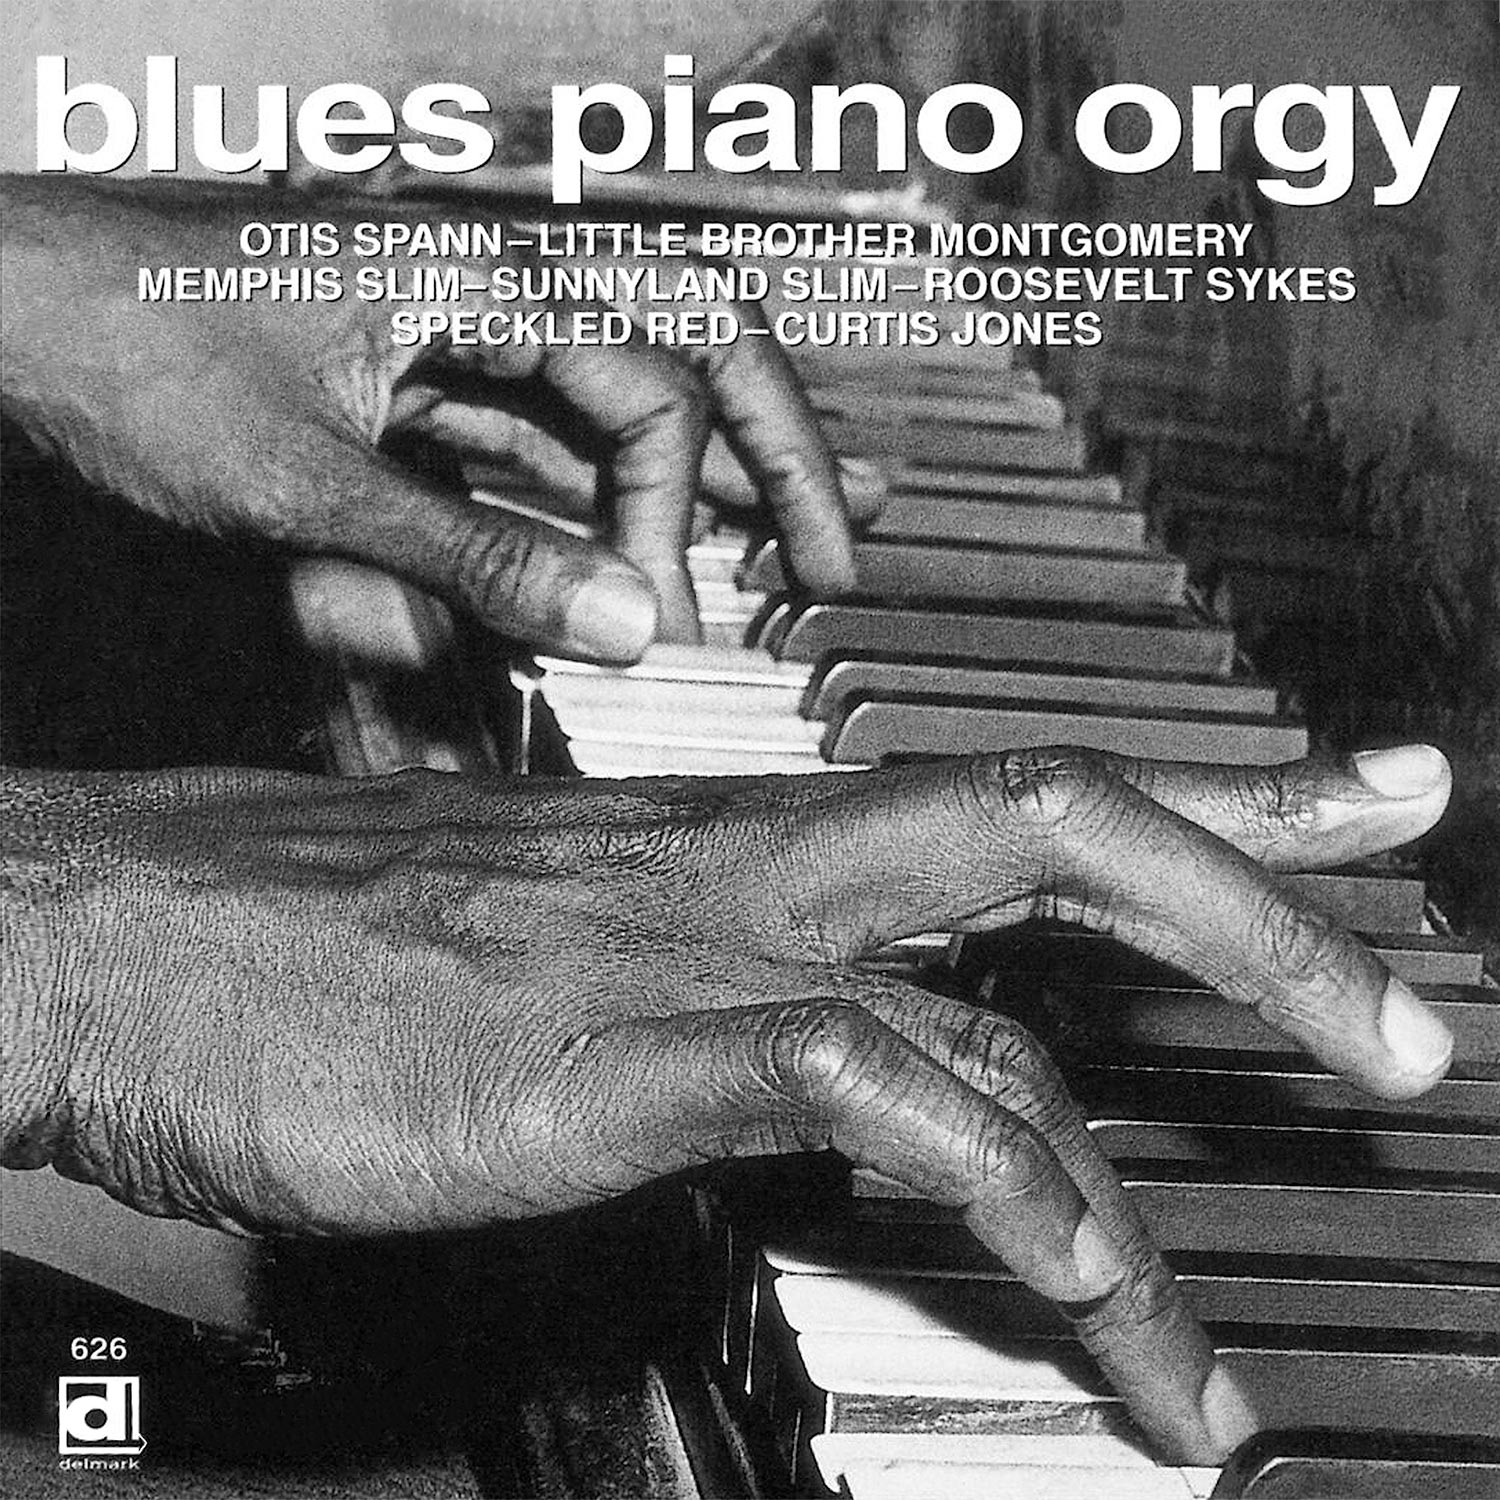 Blues Piano Orgy – DELMARK RECORDS